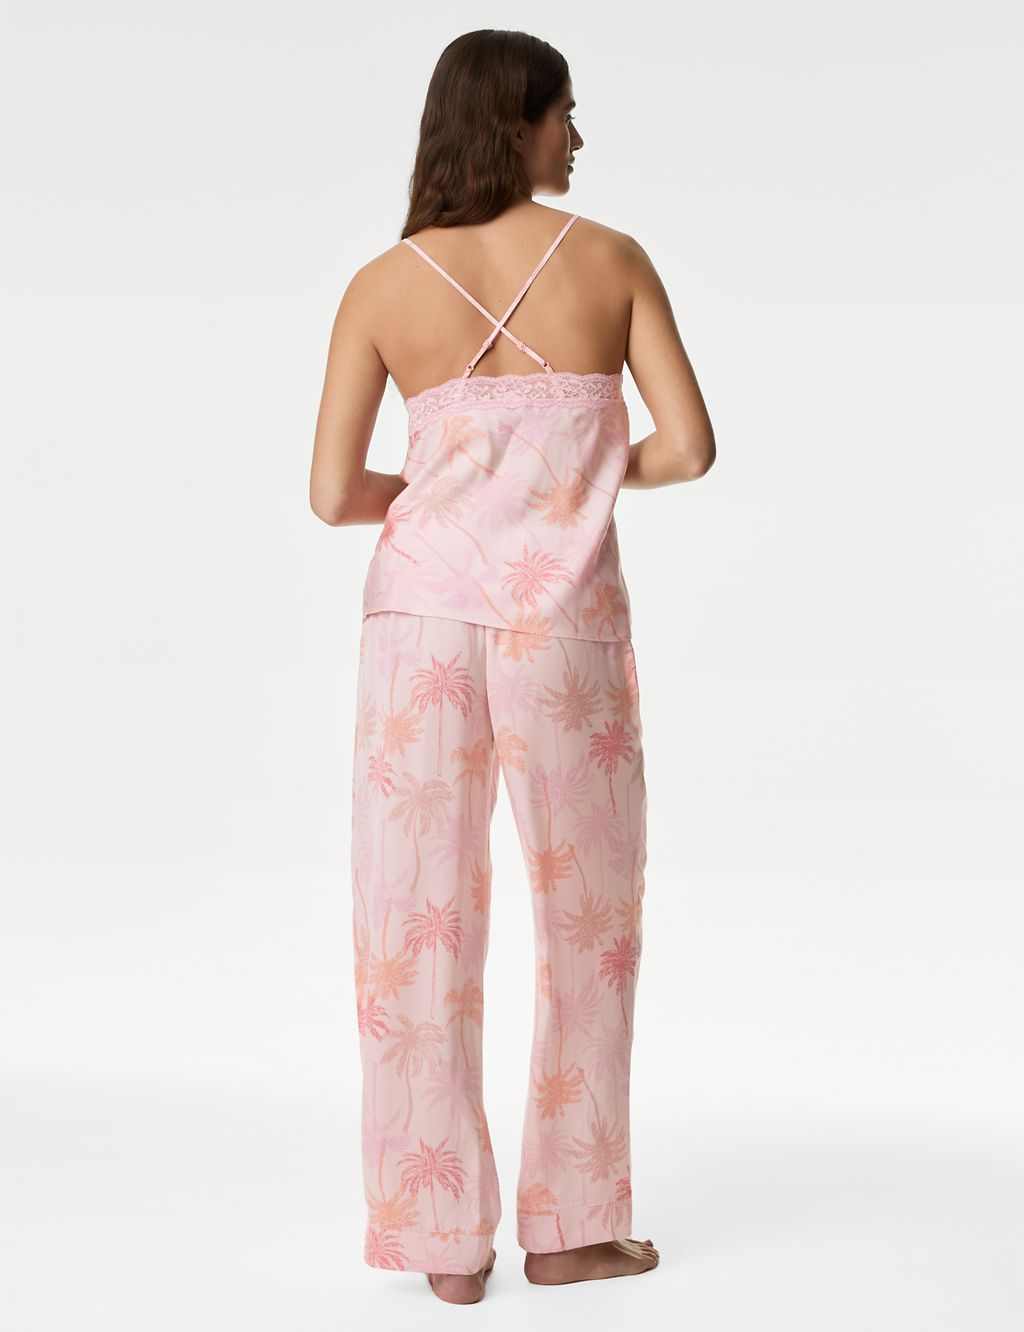 Dream Satin™ Printed Pyjama Set 6 of 6